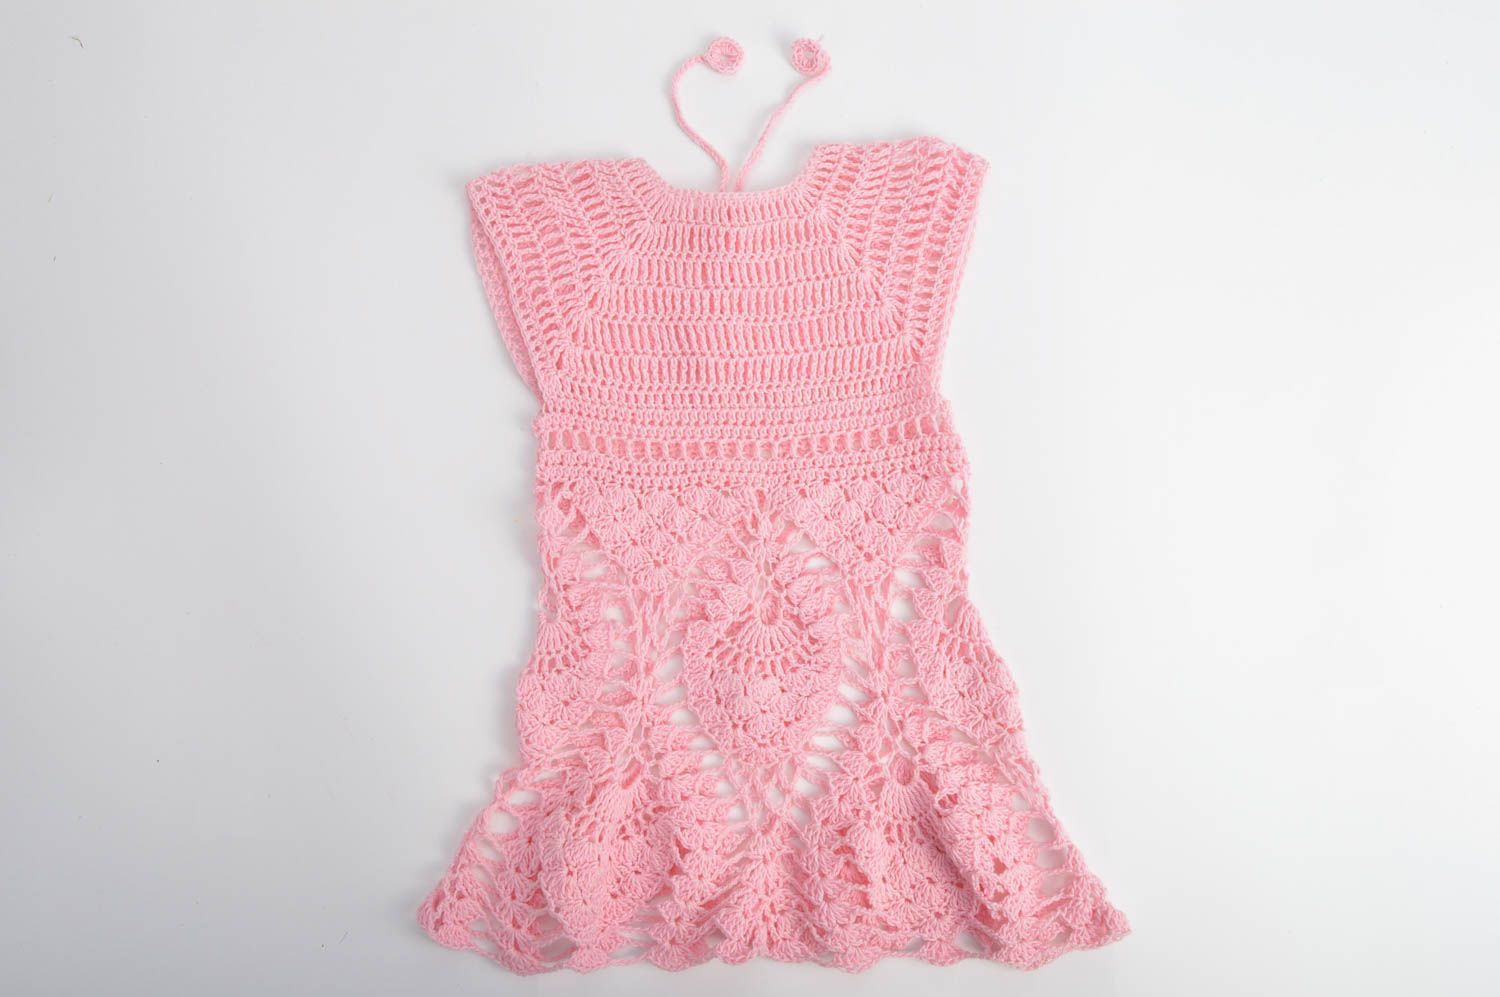 Красивое нежное платье вязаное крючком из хлопка в розовом цвете для девочек фото 2